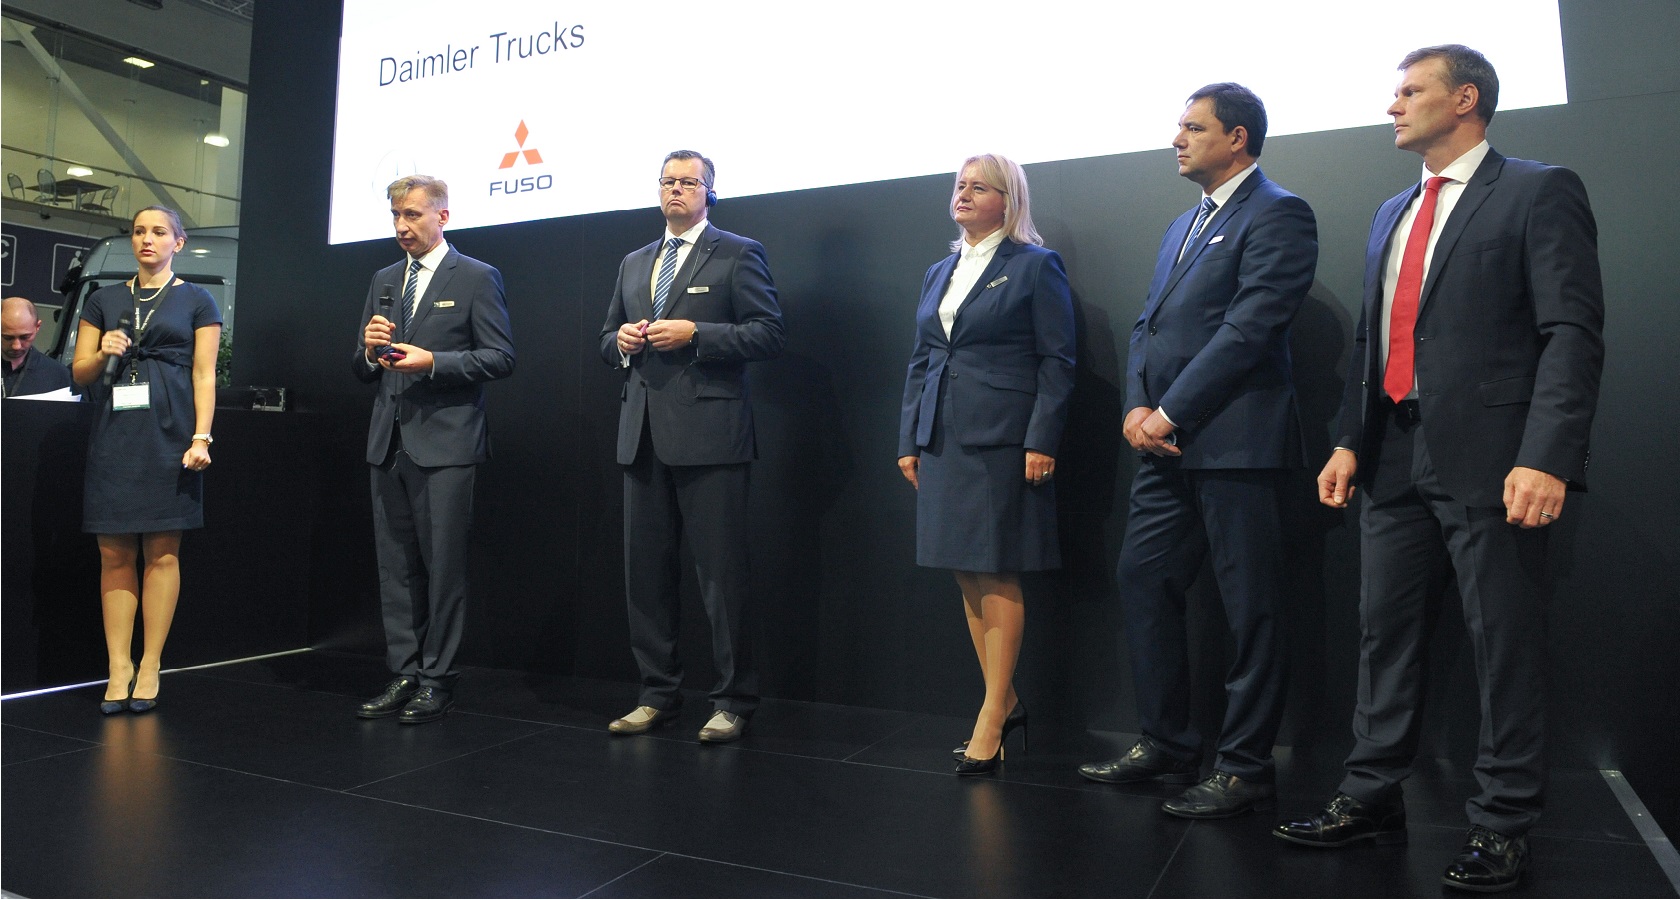 Совместная пресс-конференция Daimler и Fuso стала самой представительной: на стенде собрался весь цвет топ-менеджмента компаний (фото: ГиД / Денис Хуторецкий).